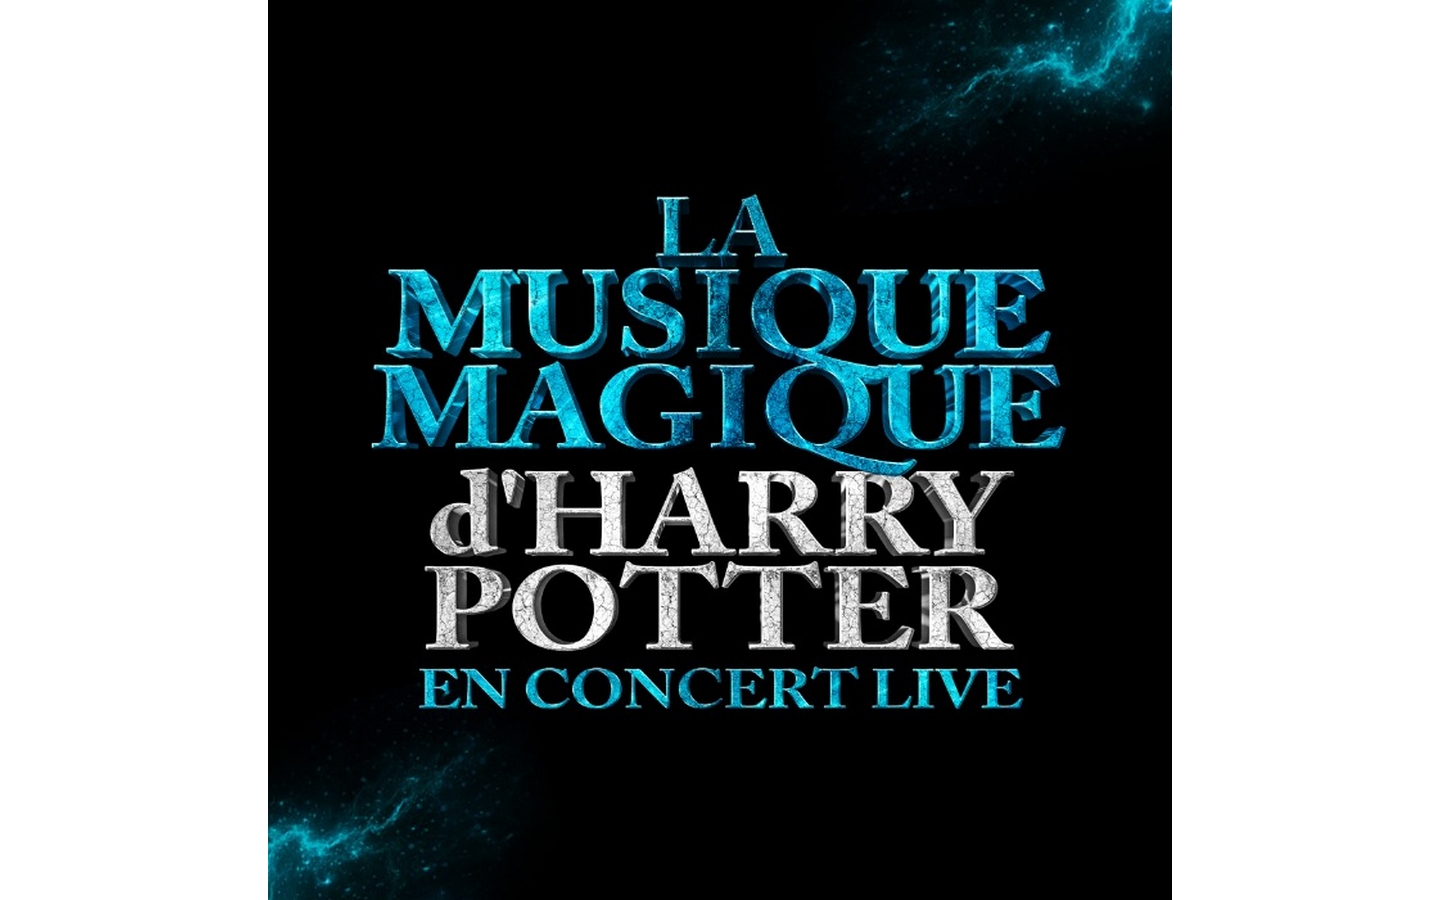 La musique magique d' ... - Crédit: Zénith de Pau Pyrénées | CC BY-NC-ND 4.0